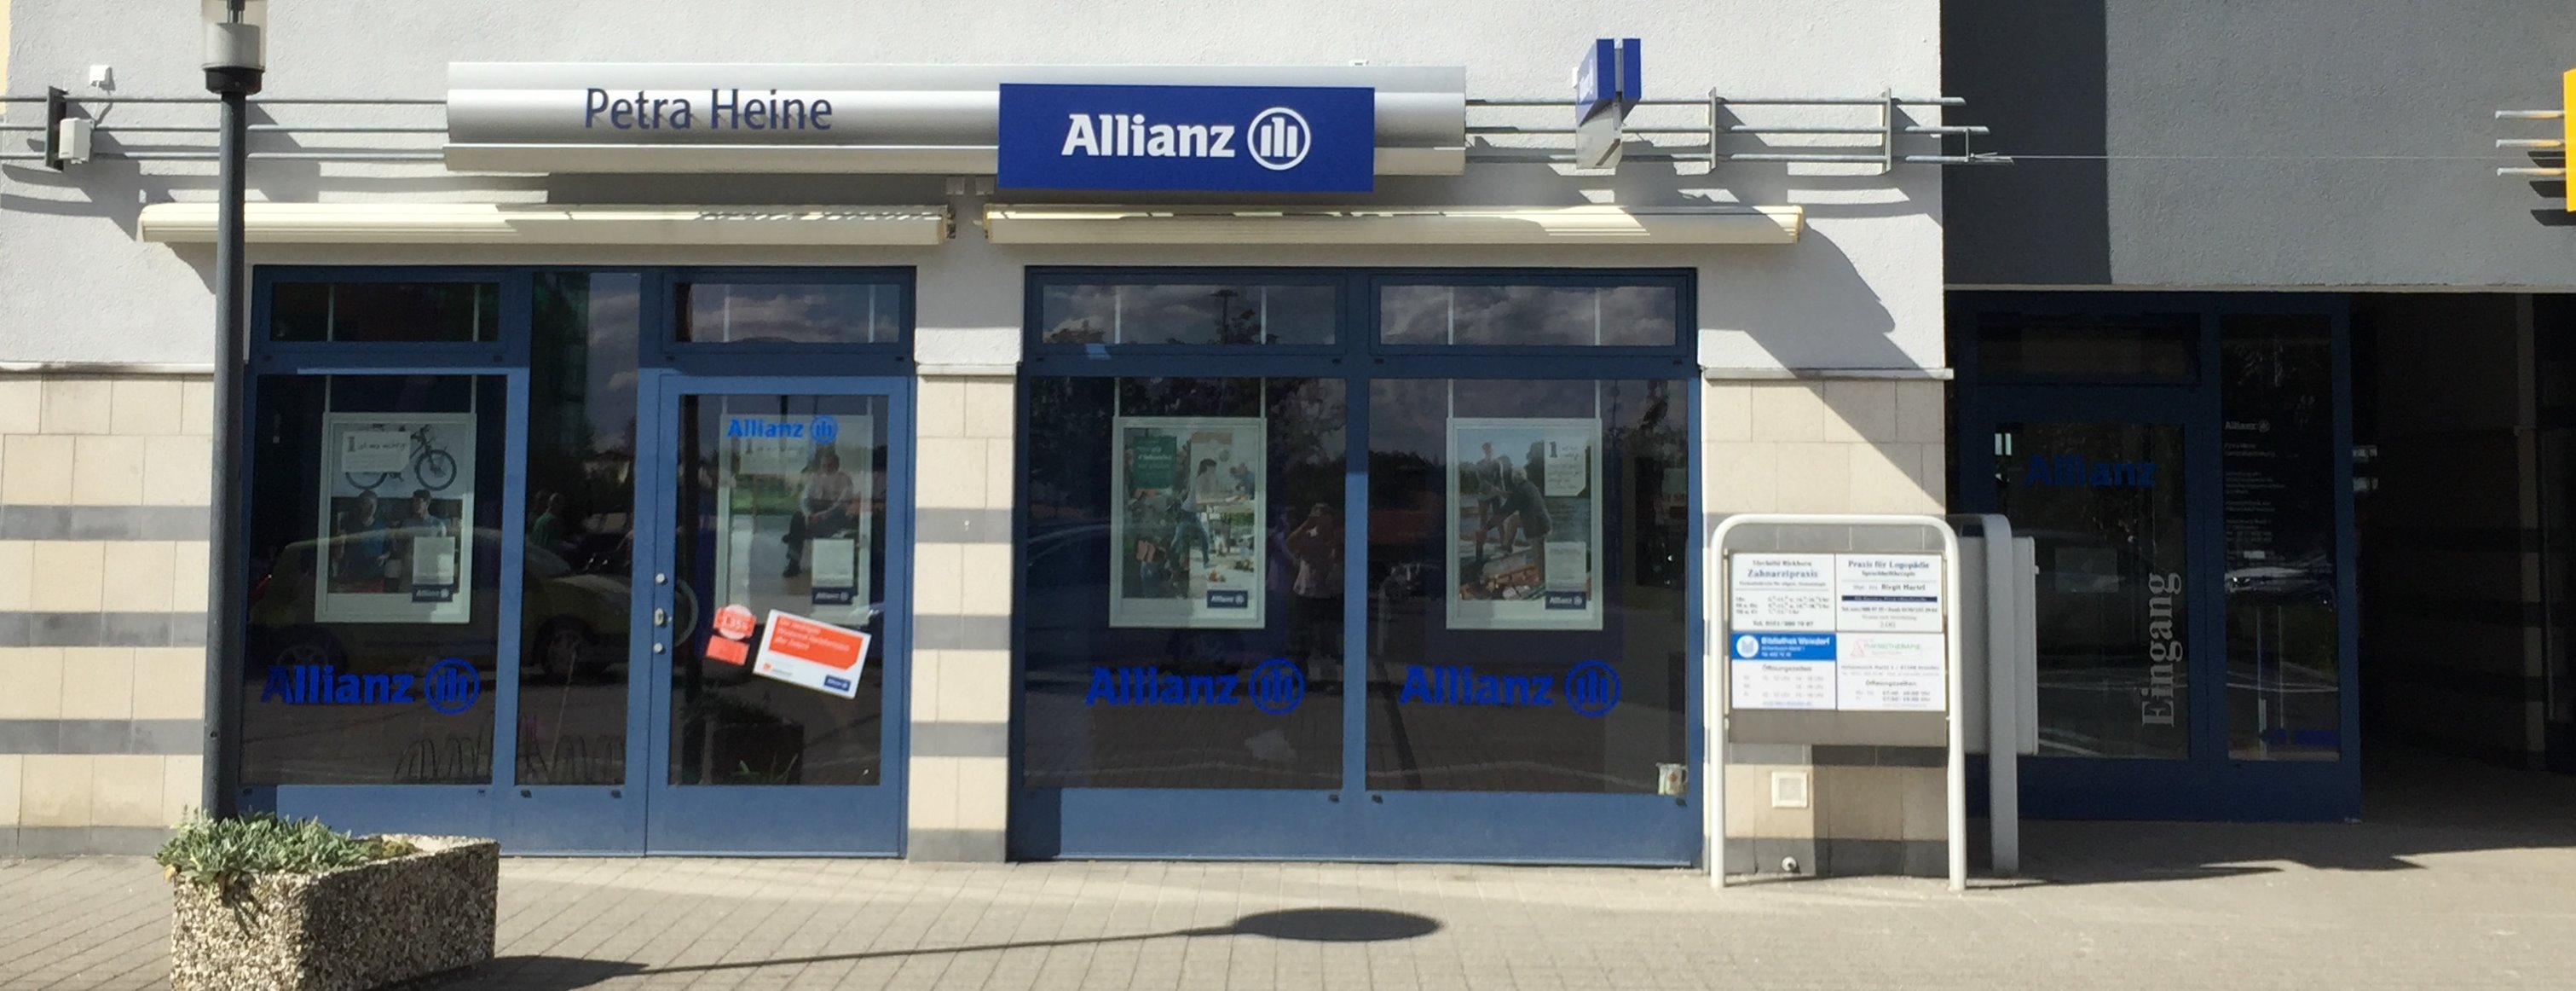 Allianz Versicherung Petra Heine Dresden - Agenturblickfang